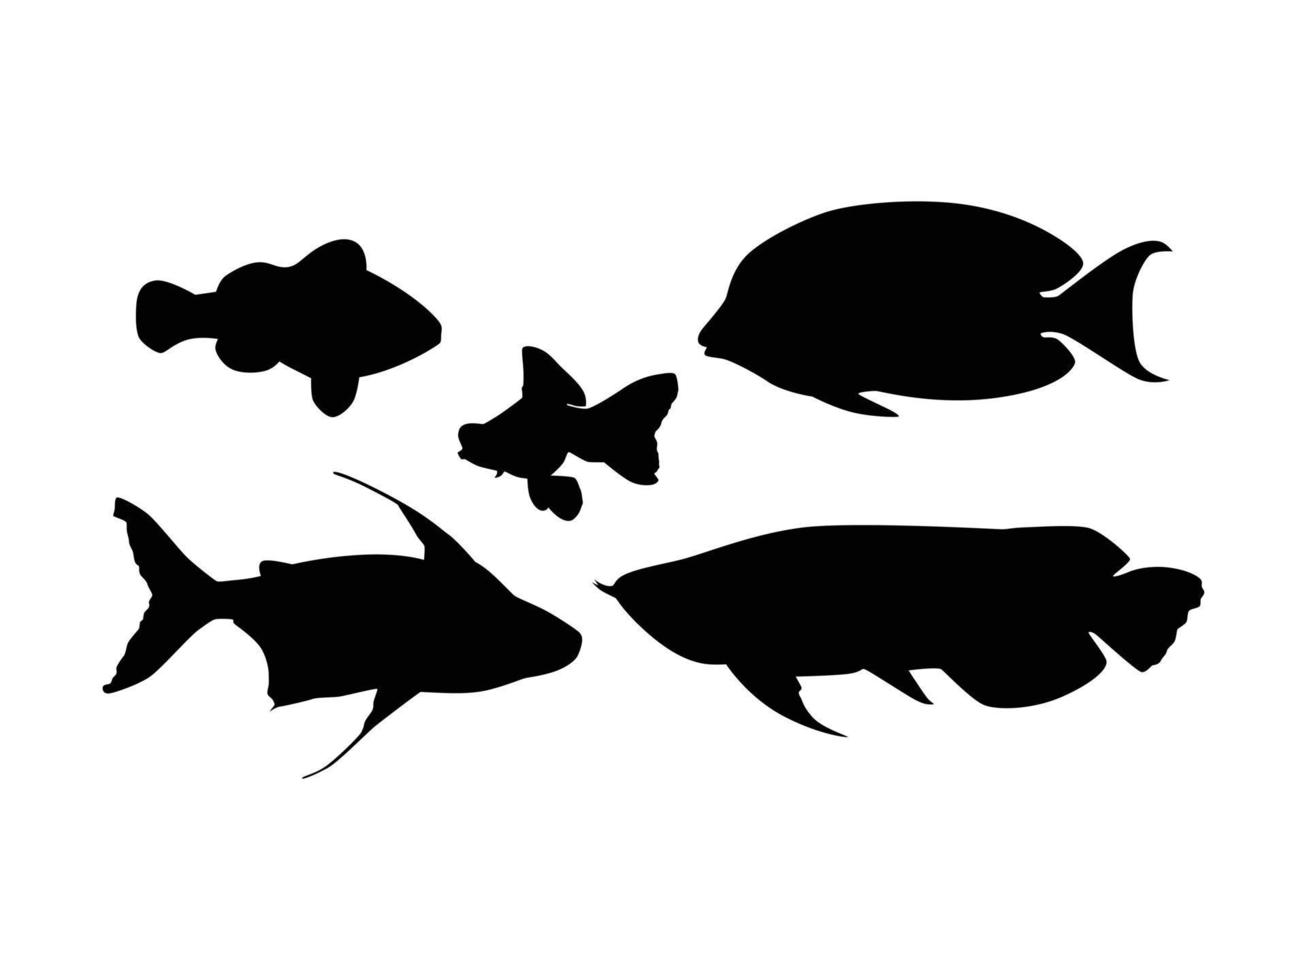 ensemble de silhouette de poissons isolé sur fond blanc - illustration vectorielle vecteur